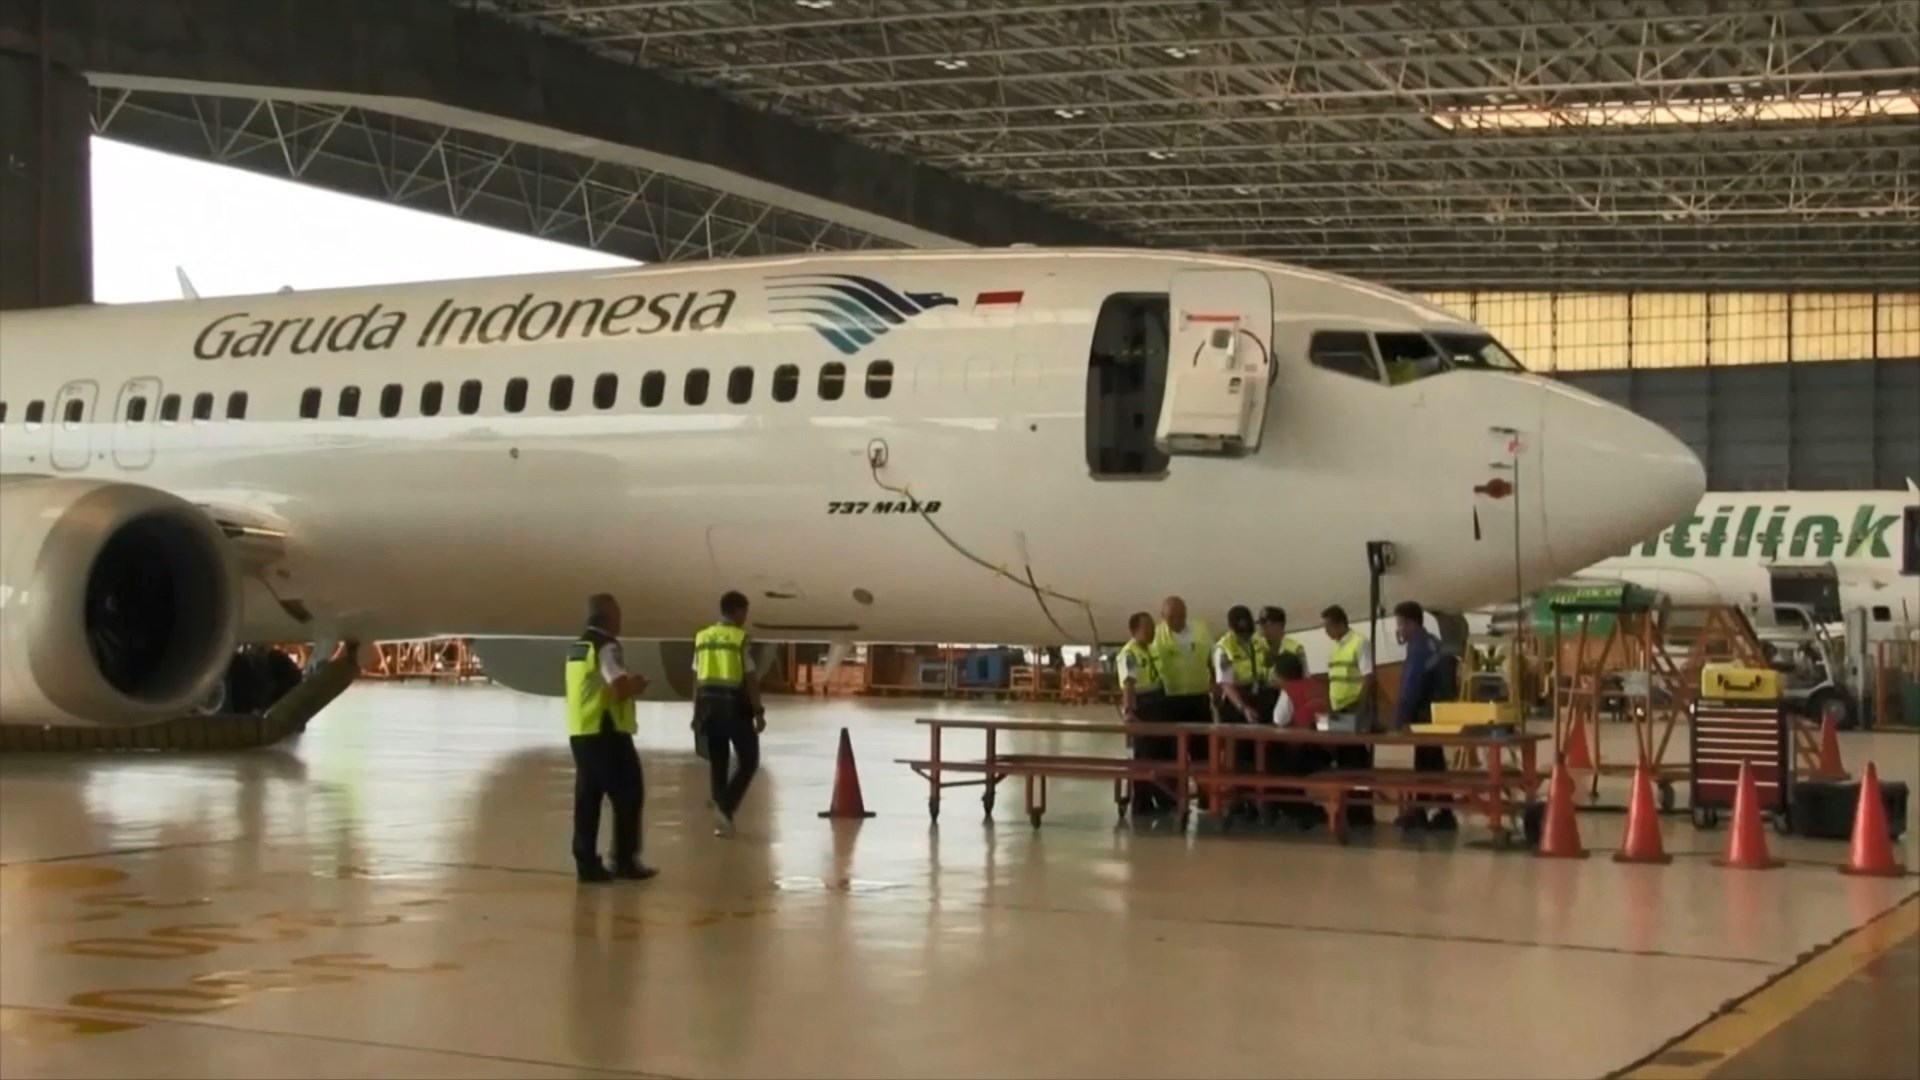 嘉魯達印尼航空尋求取消737MAX訂單